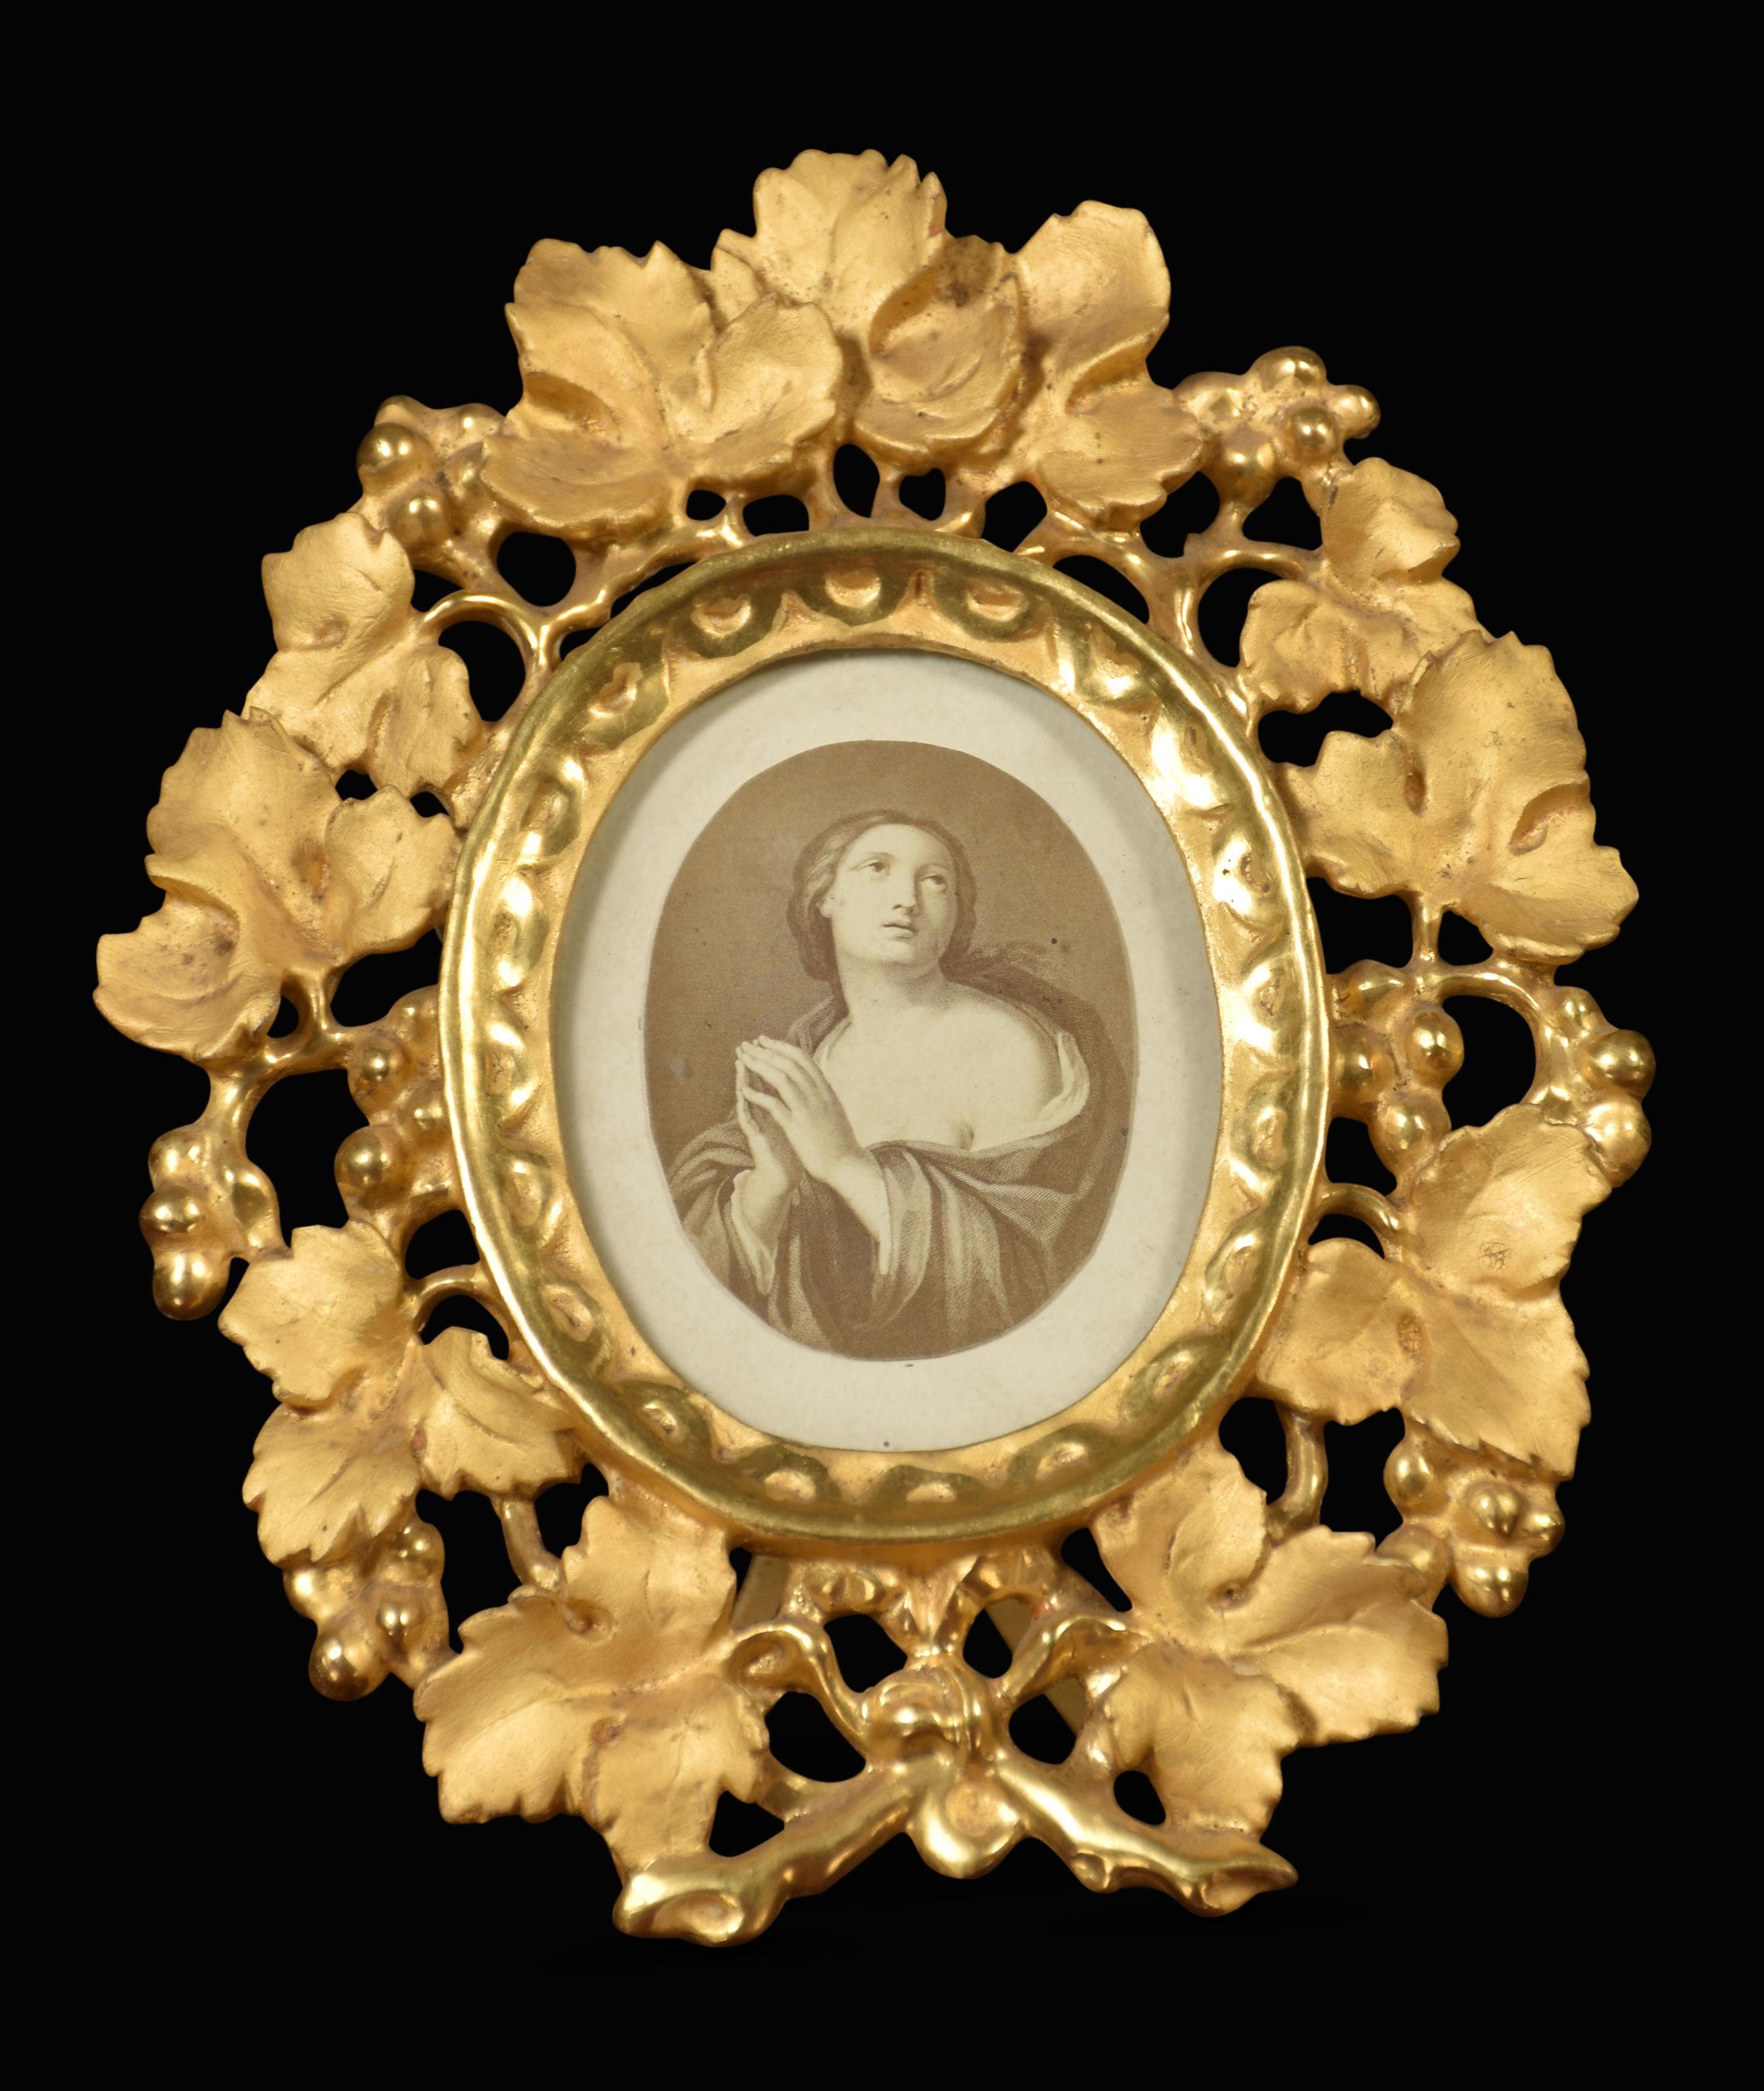 Vergoldetes Bild im Renaissance-Stil in einem Rahmen mit Blattwerk, der ein traditionelles italienisches Bild einschließt.
Abmessungen
Höhe 8,5 Zoll
Breite 7 Zoll
Tiefe 1 Zoll.